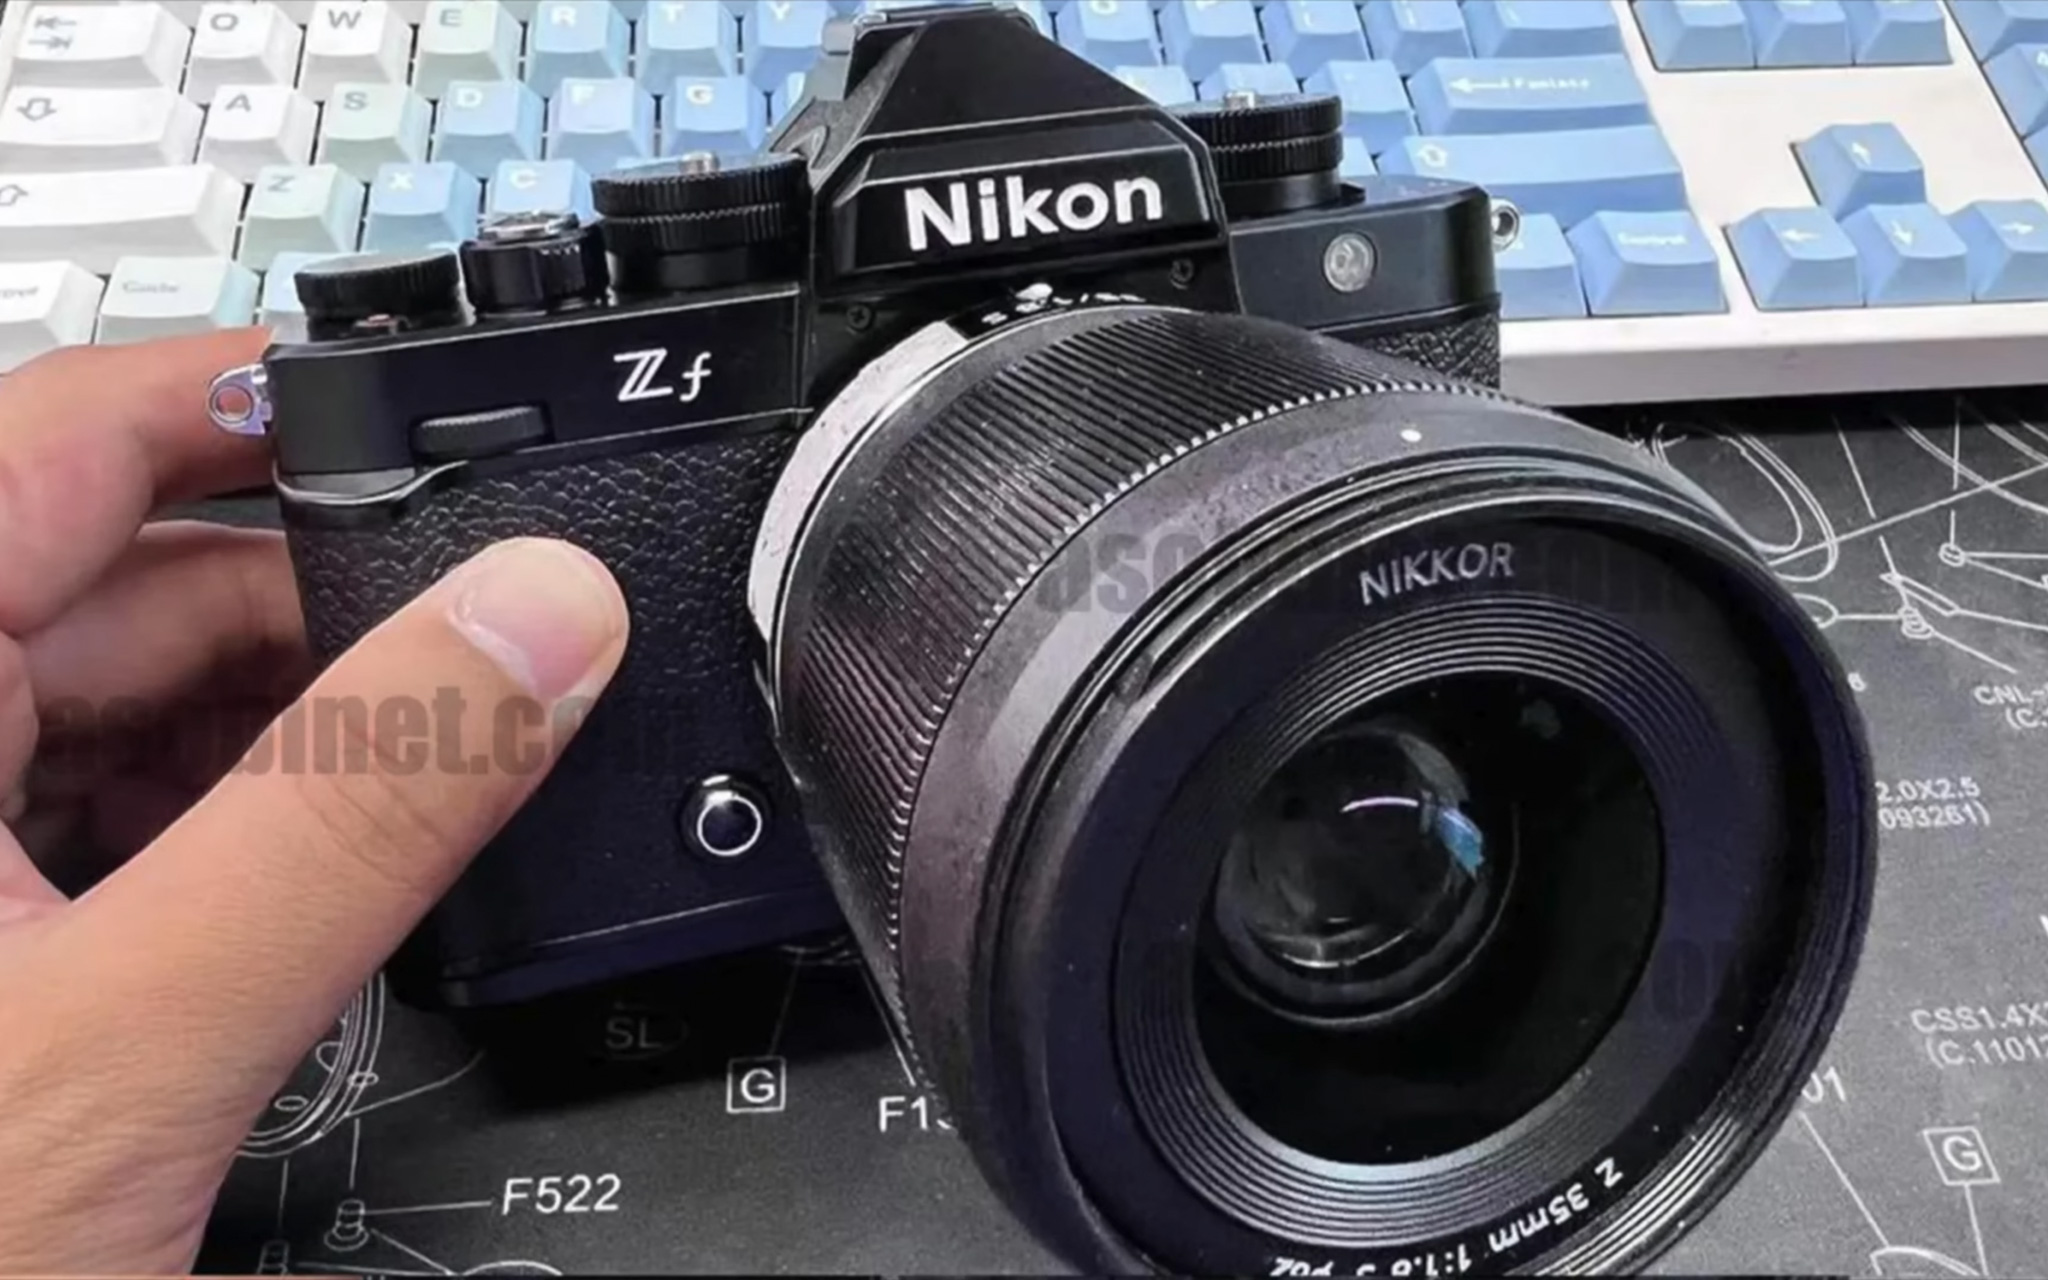 Nikon ấn định ngày ra mắt chiếc Full-frame Zf là 20/09 tới?